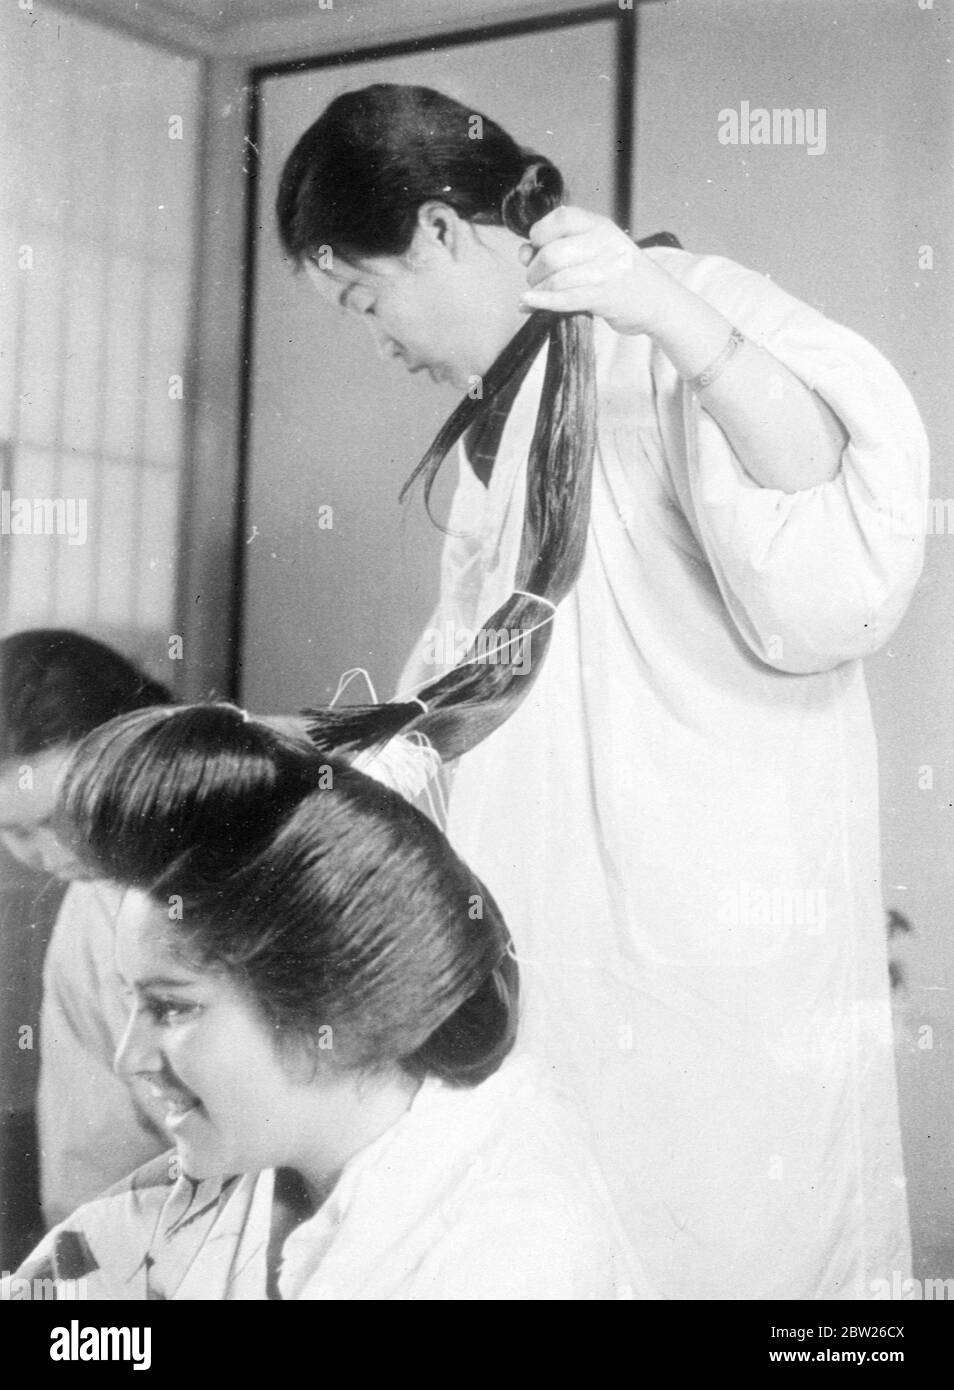 Le ragazze giapponesi si sottomettono a 2 ore di agonia per il coiffure alluring. Poche persone che ammirano i bei vestiti di capelli delle ragazze giapponesi realizzano la punizione fisica extruducciante che passano attraverso per ottenerli. Queste immagini mostrano i complessi processi che vanno a fare l'effetto finale, dopo due ore di lavoro da parte del Kamiyuisan (parrucchiere). Il soggetto per le immagini, Adrienne Moore, e quando il coiffure è stato finito ha detto che quando si reclinava in una sedia ha ritenuto come se Haskell stava dicendo fuori e ha scoperto che sdraiarsi era quasi impossibile. Un altro fatto che ha scoperto era che J Foto Stock